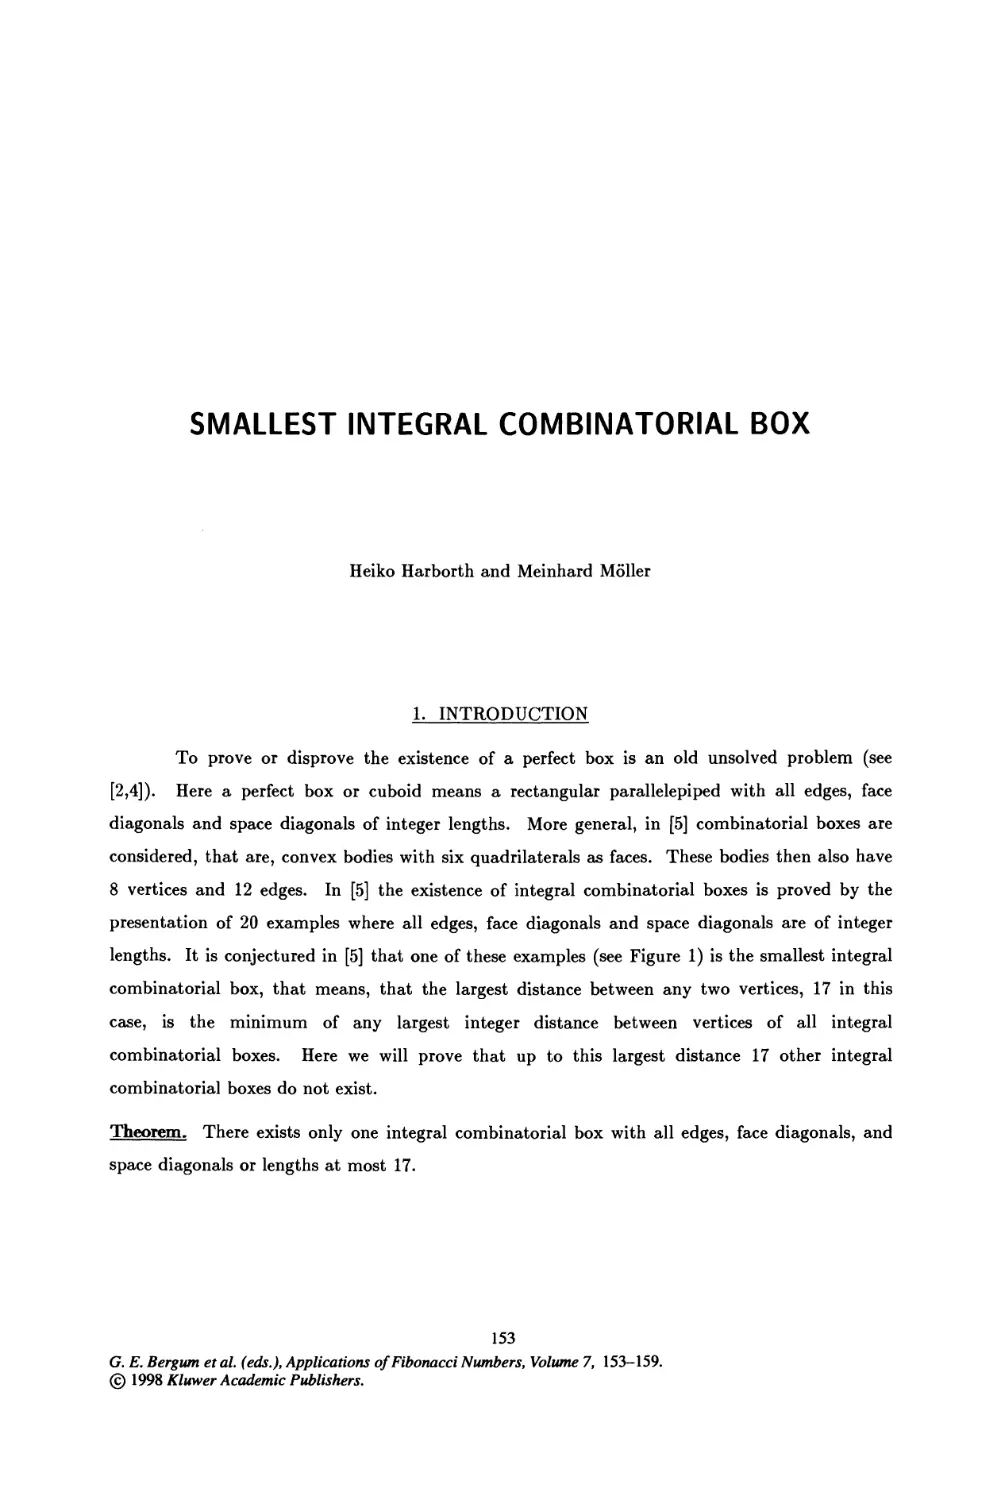 19. Smallest Integral Combinatorial Box